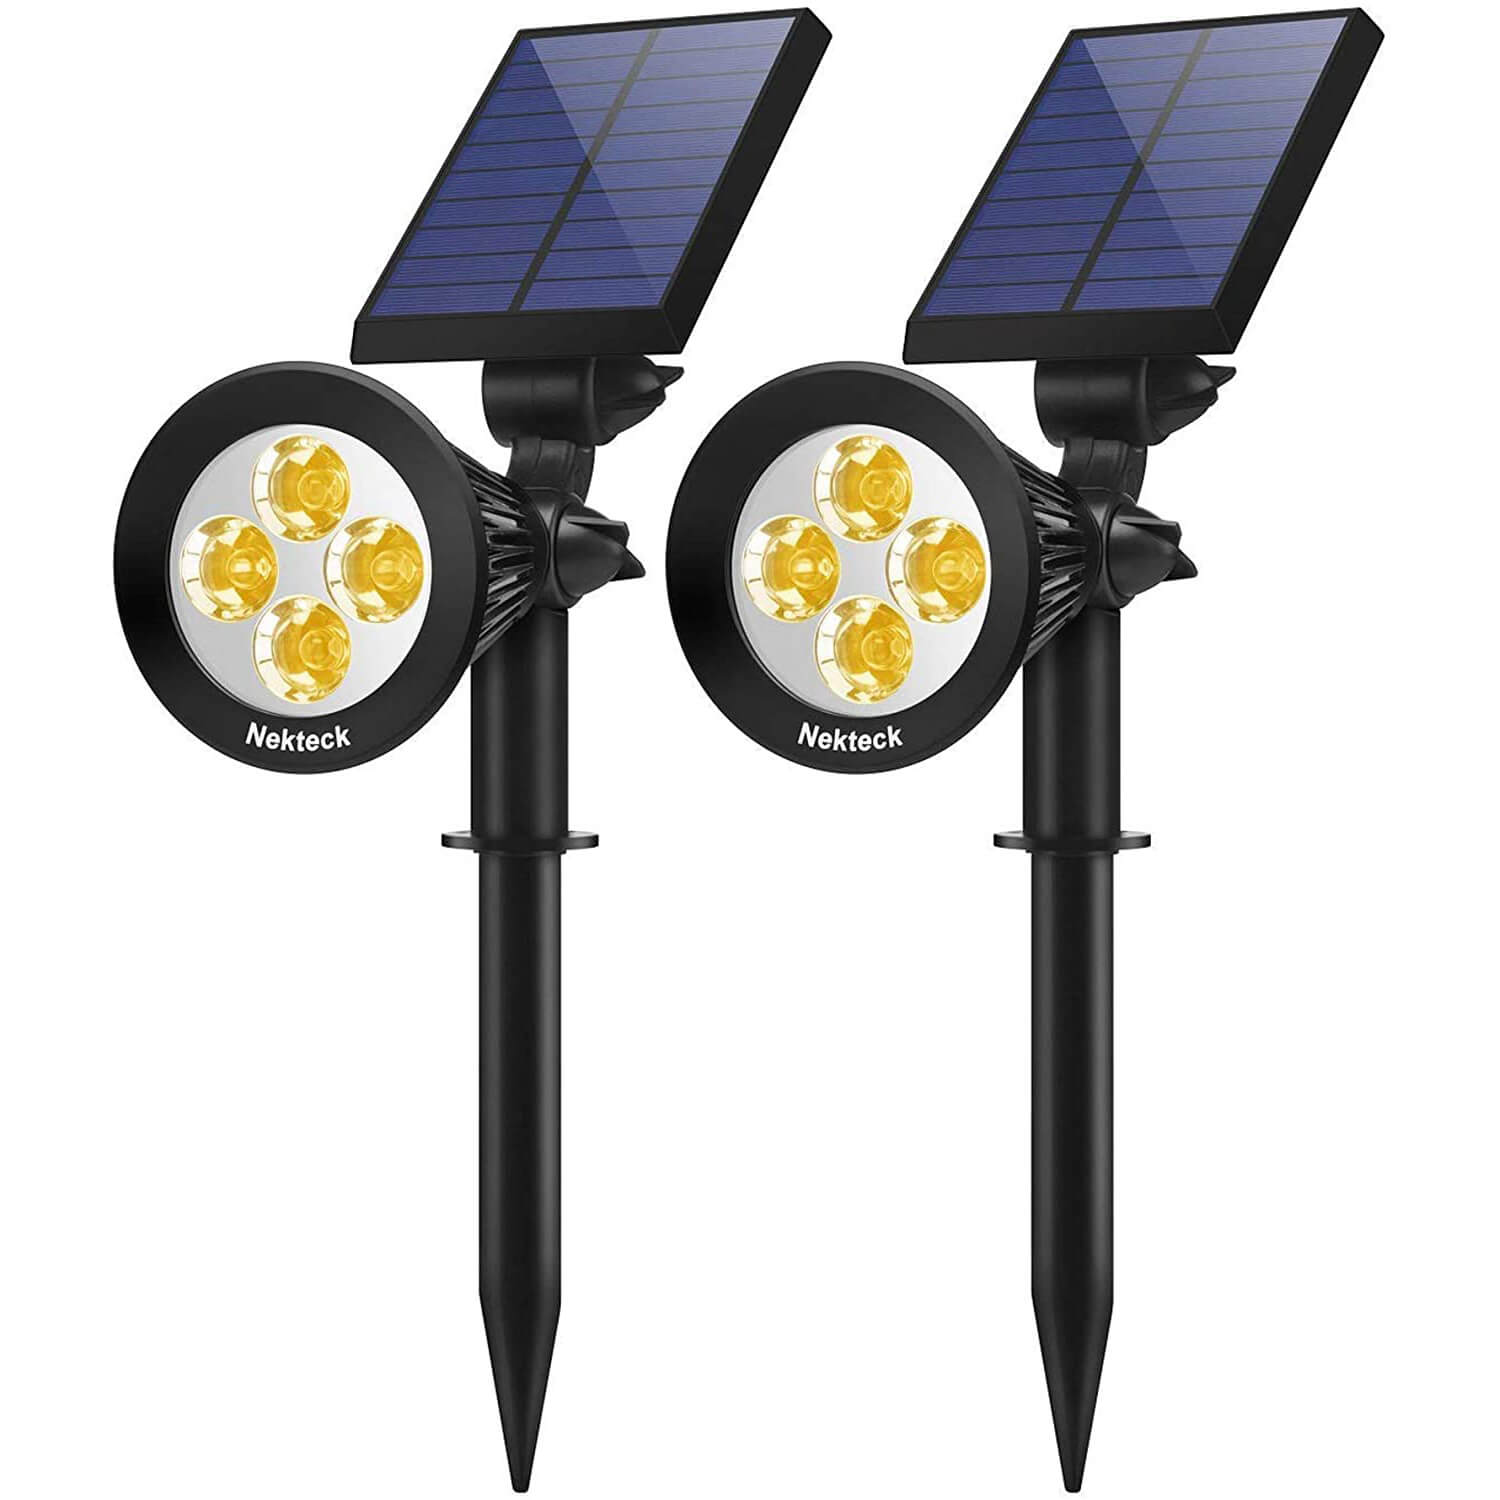 Nekteck 2 Pack Solar Lights, 2-in-1 Outdoor Solar Spotlights